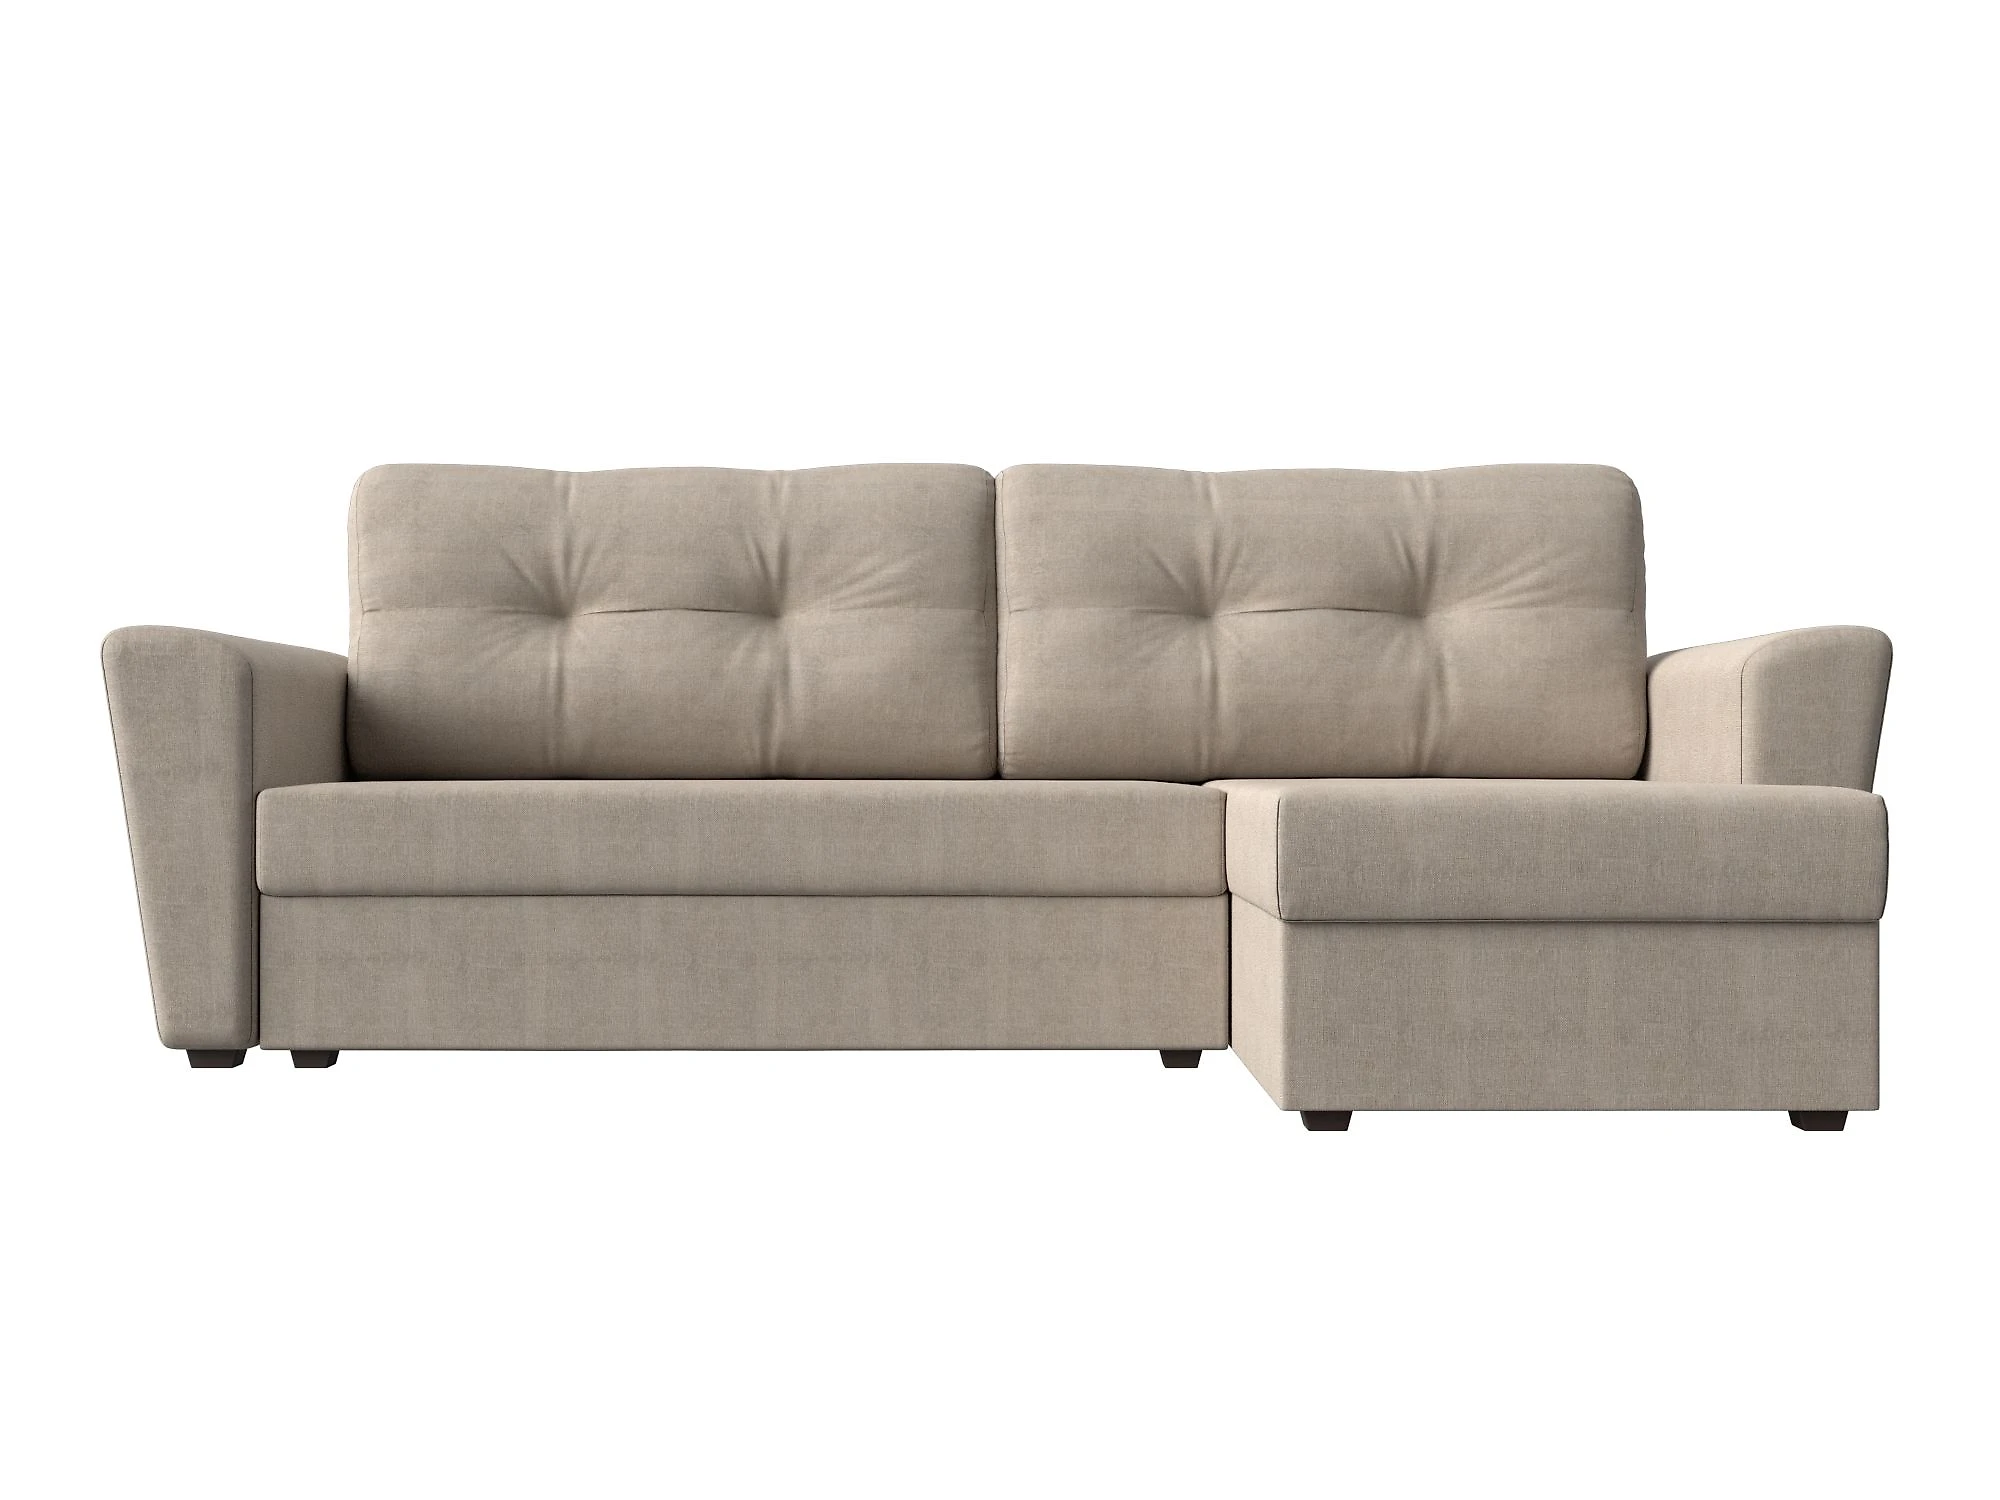  угловой диван из рогожки Амстердам Лайт Кантри Дизайн 1